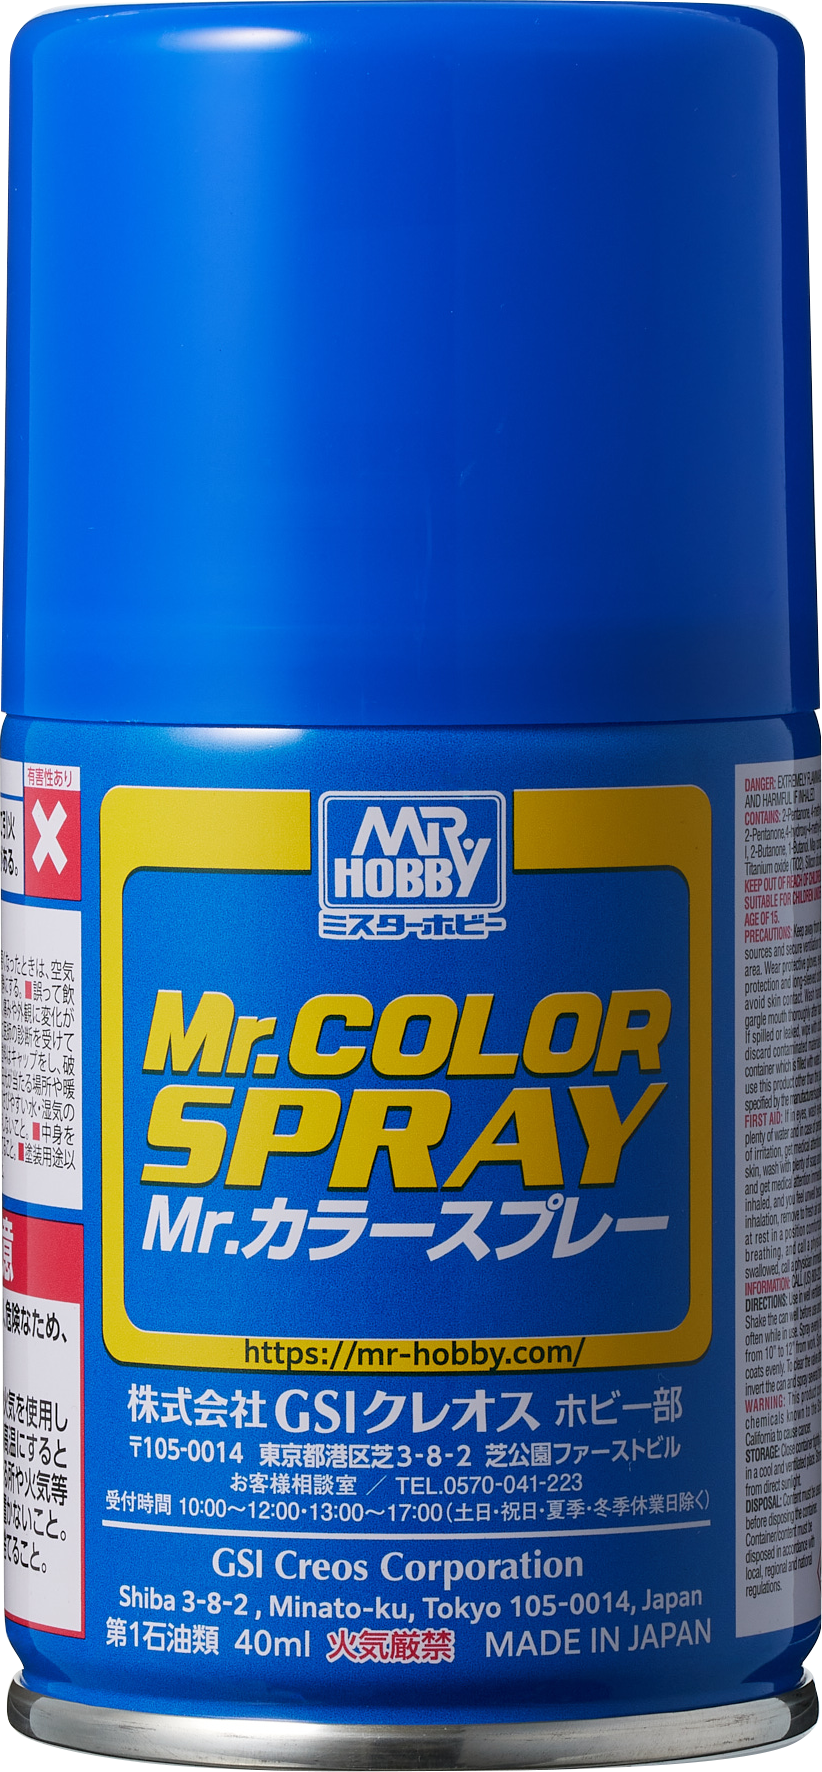 Mr.カラースプレー Mr.カラー 塗料・うすめ液 GSI クレオス